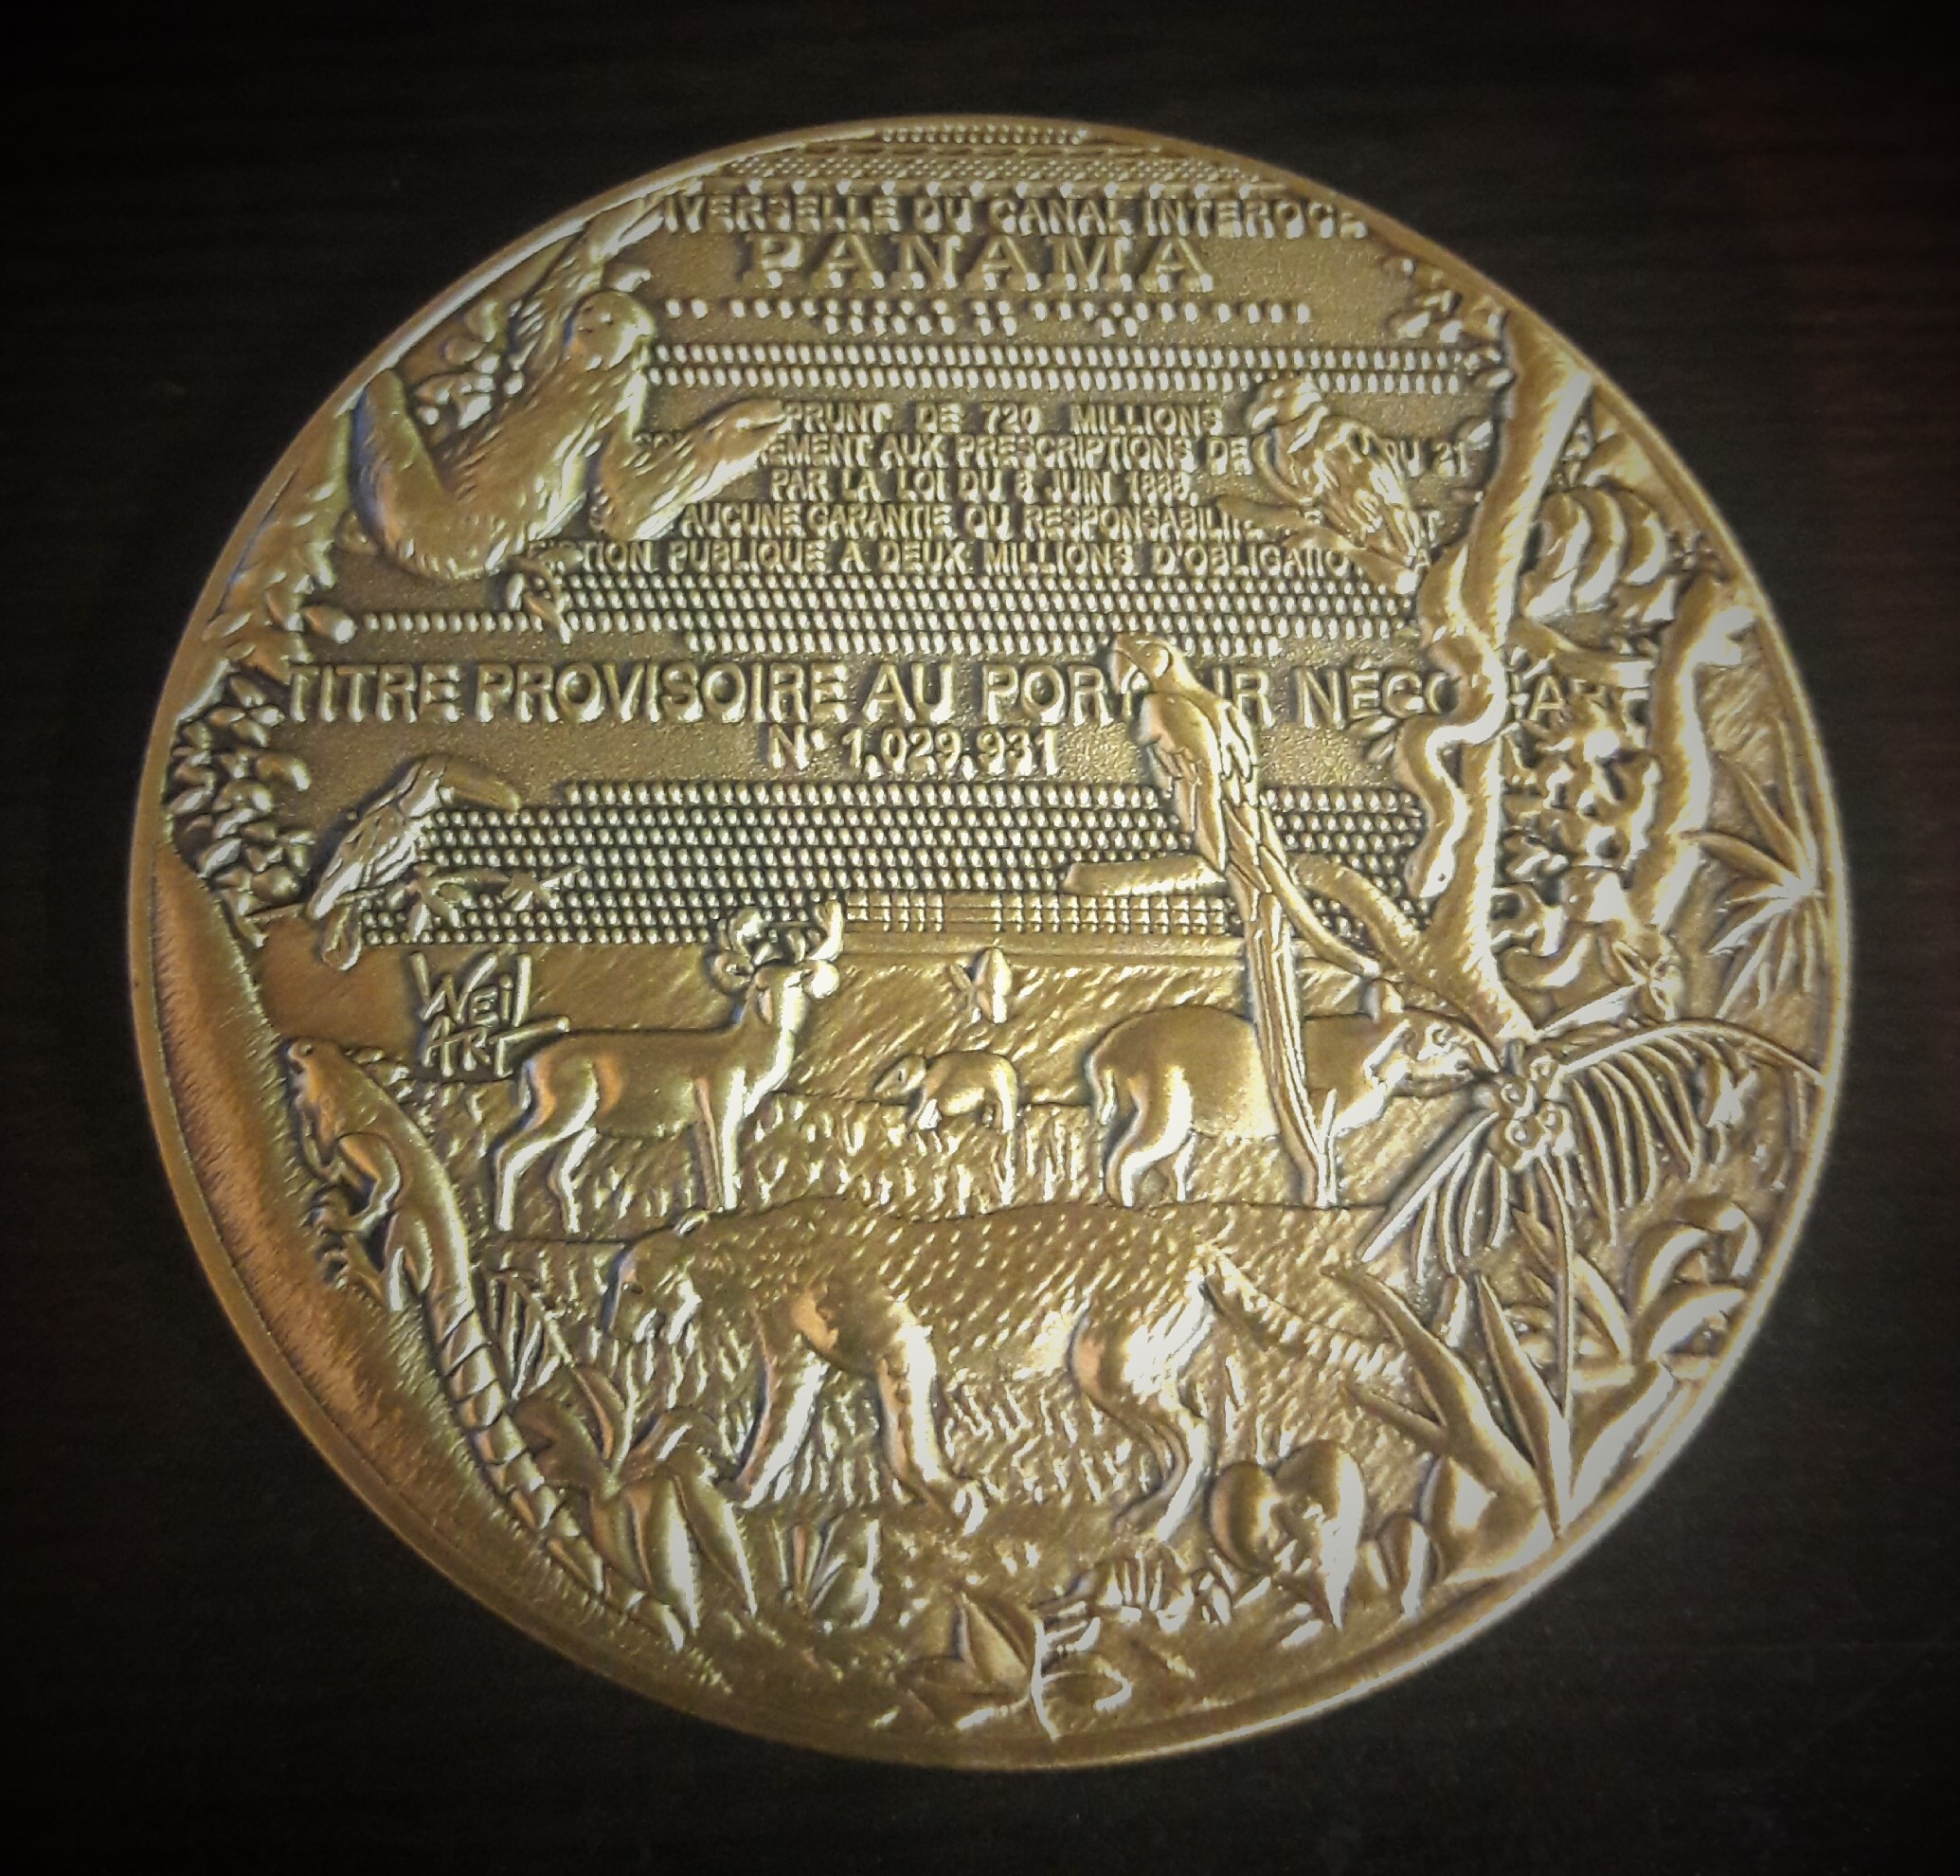 Medalla Weil Art. Homenaje a la fauna - Migraciones humanas